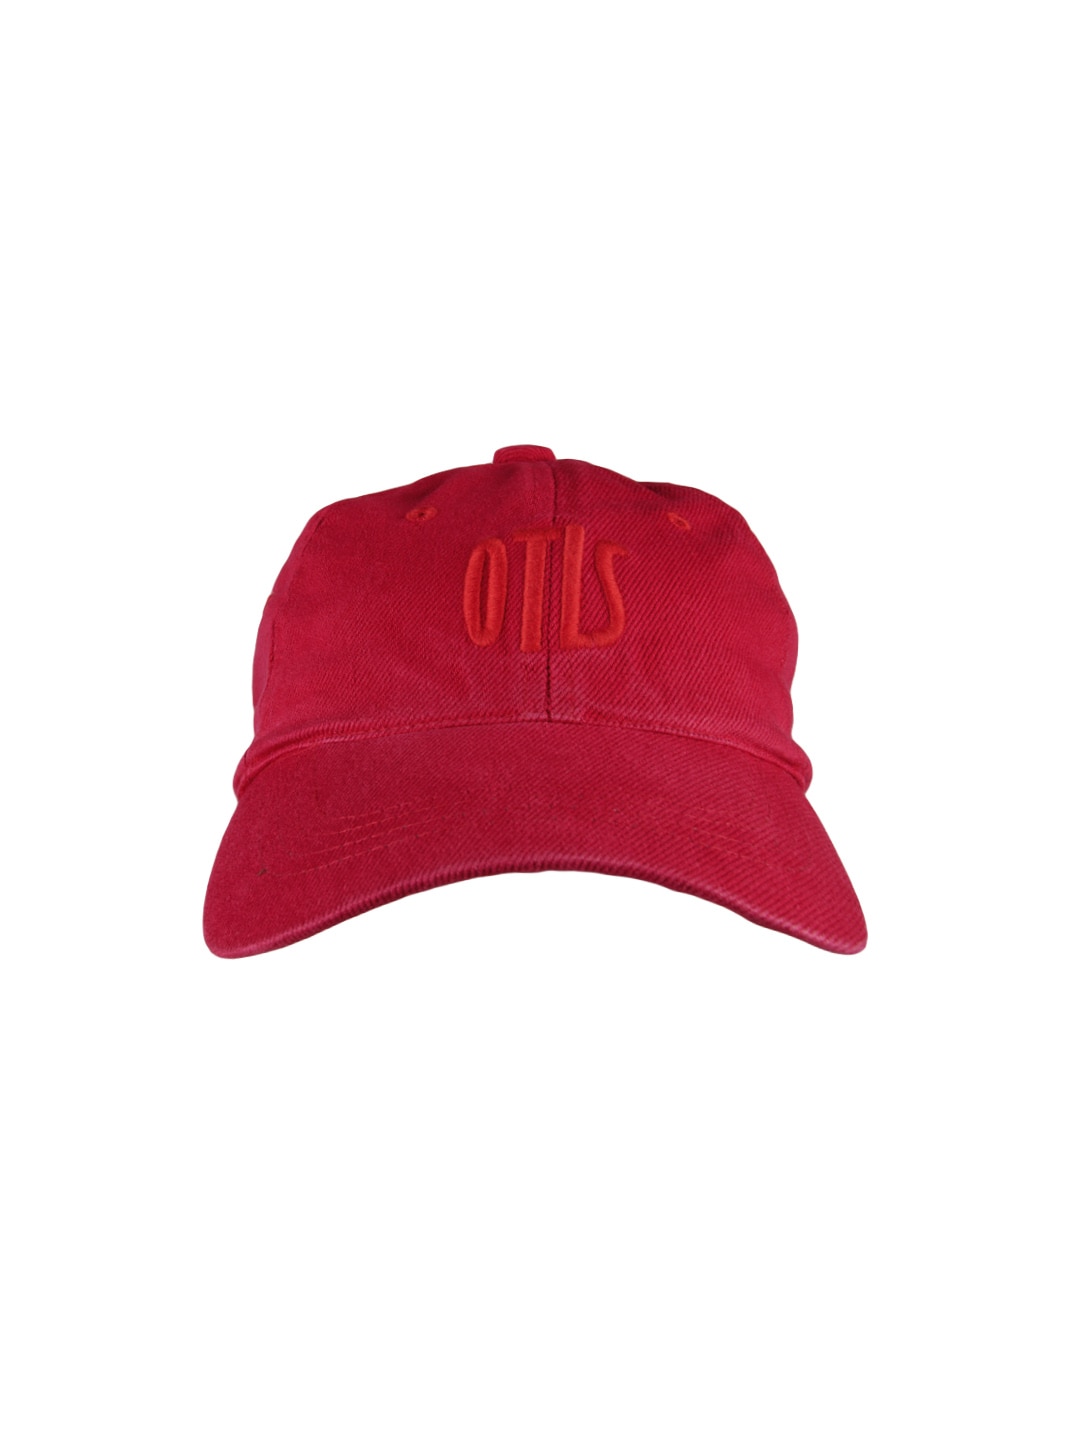 OTLS Unisex Red Cap